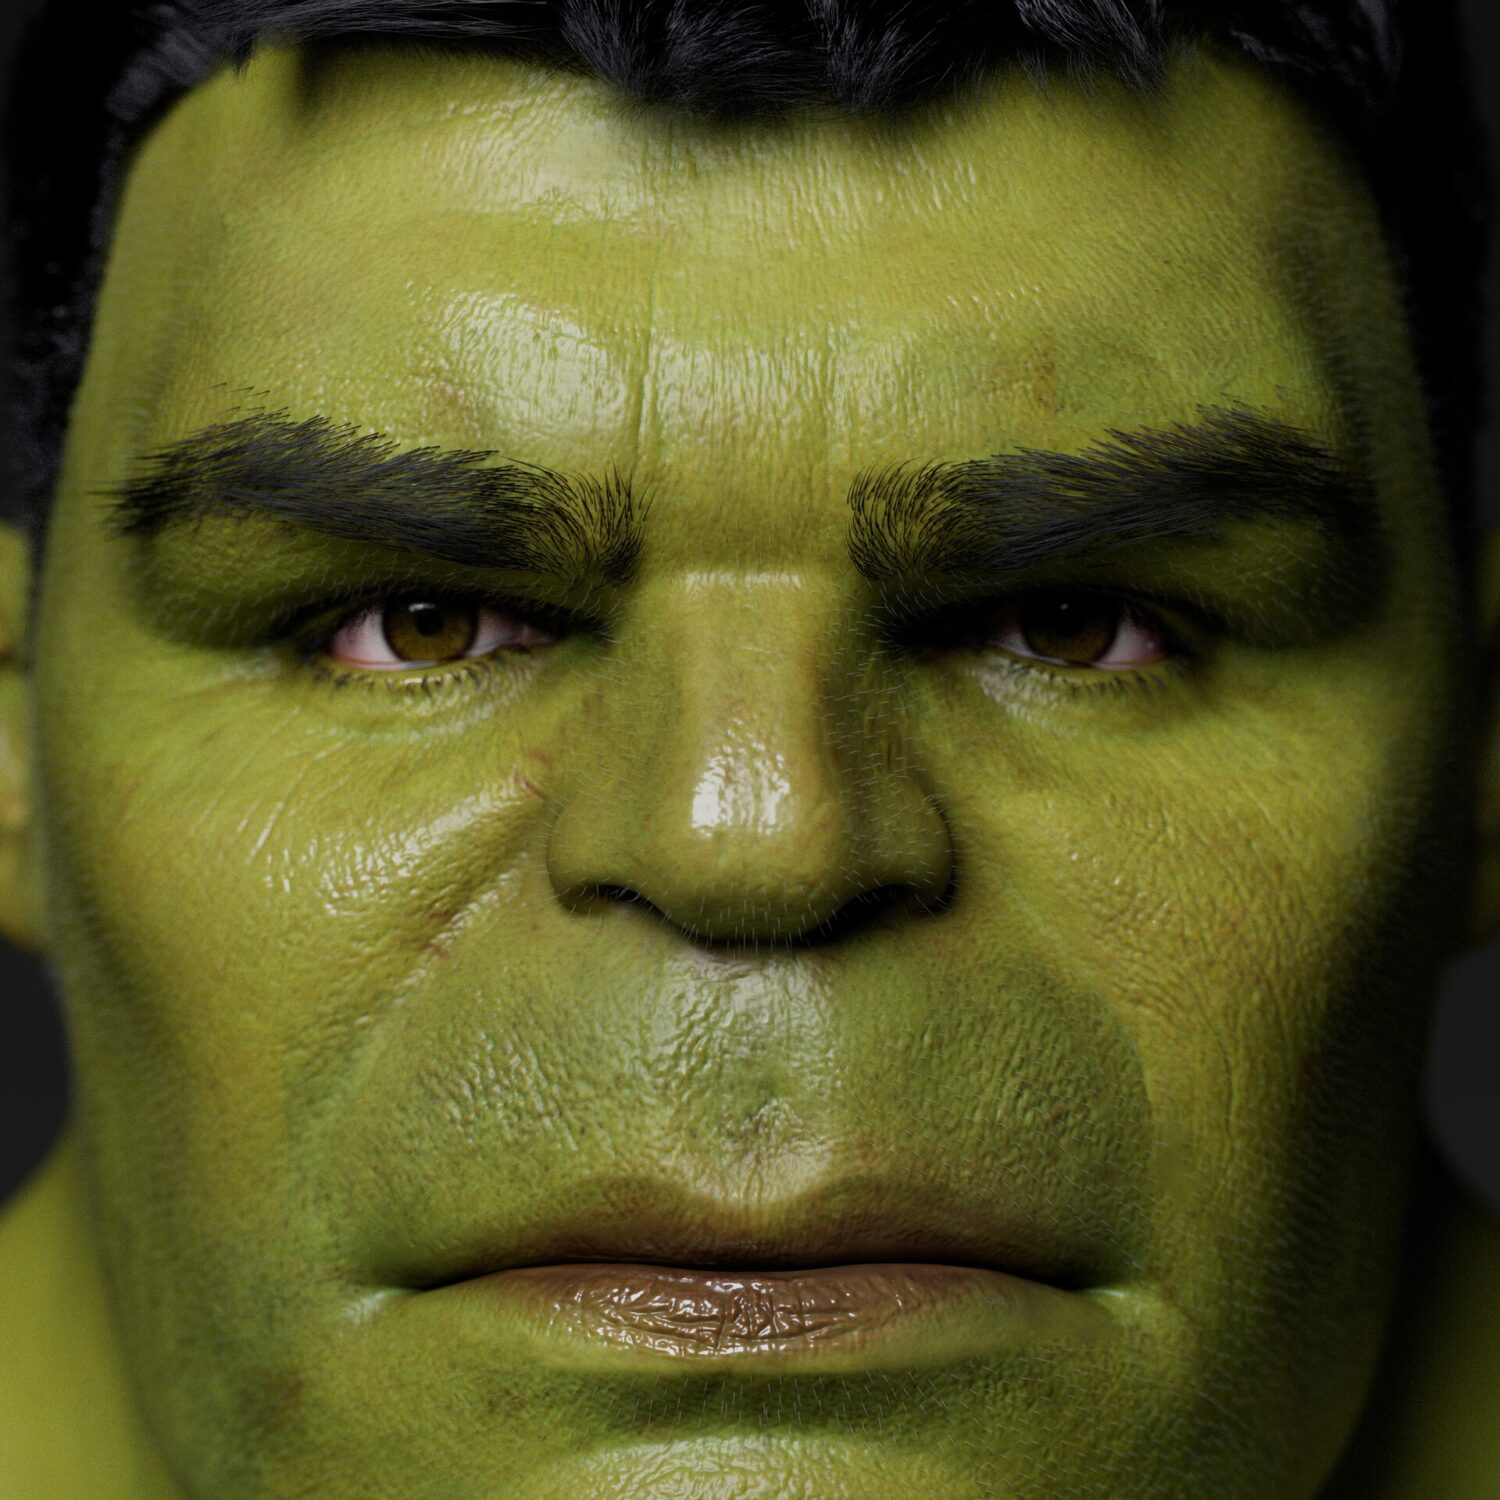 Hulk Hulk Hulk